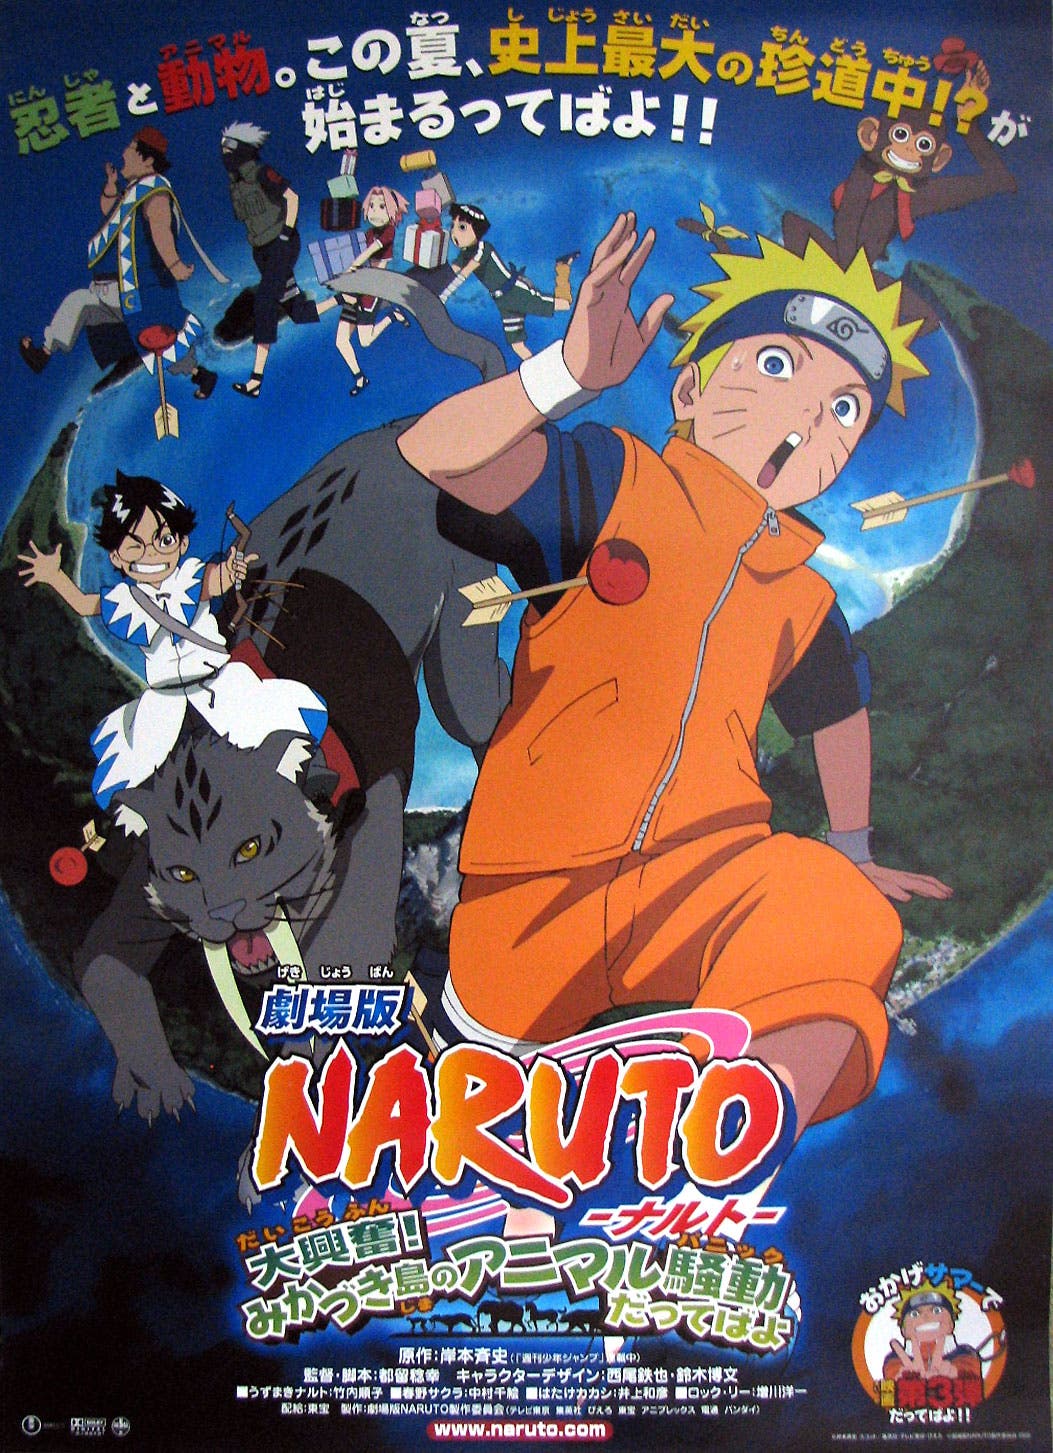 ▷Cuál es la cronología de Naruto